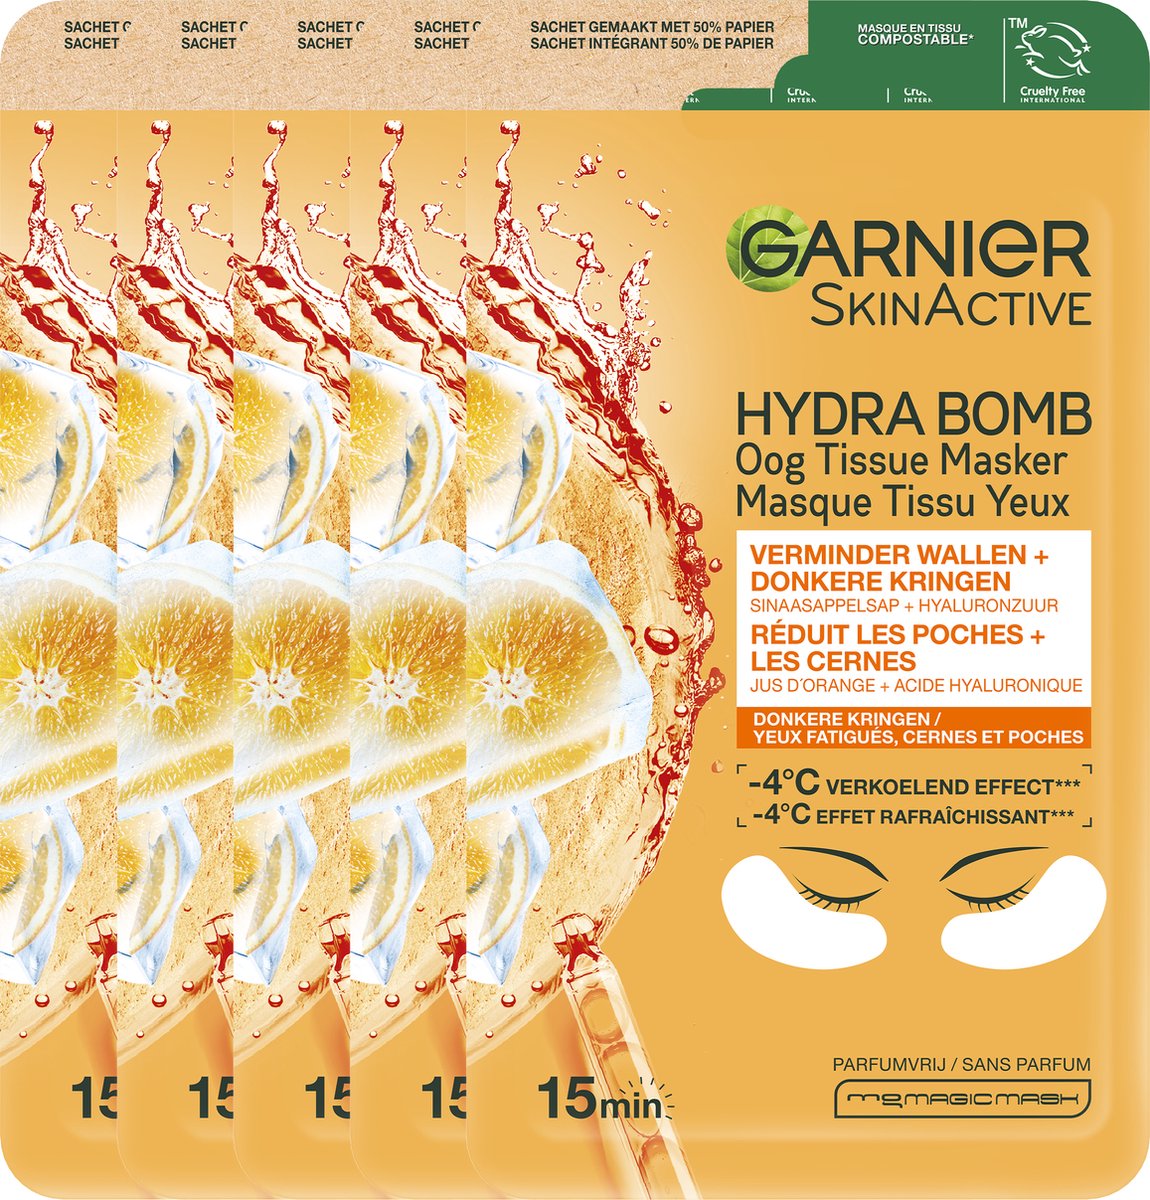 Garnier SkinActive Sheet Oogmasker - 5 Stuks - Sinaasappelsap en Hyaluronzuur - Voordeelverpakking - Garnier